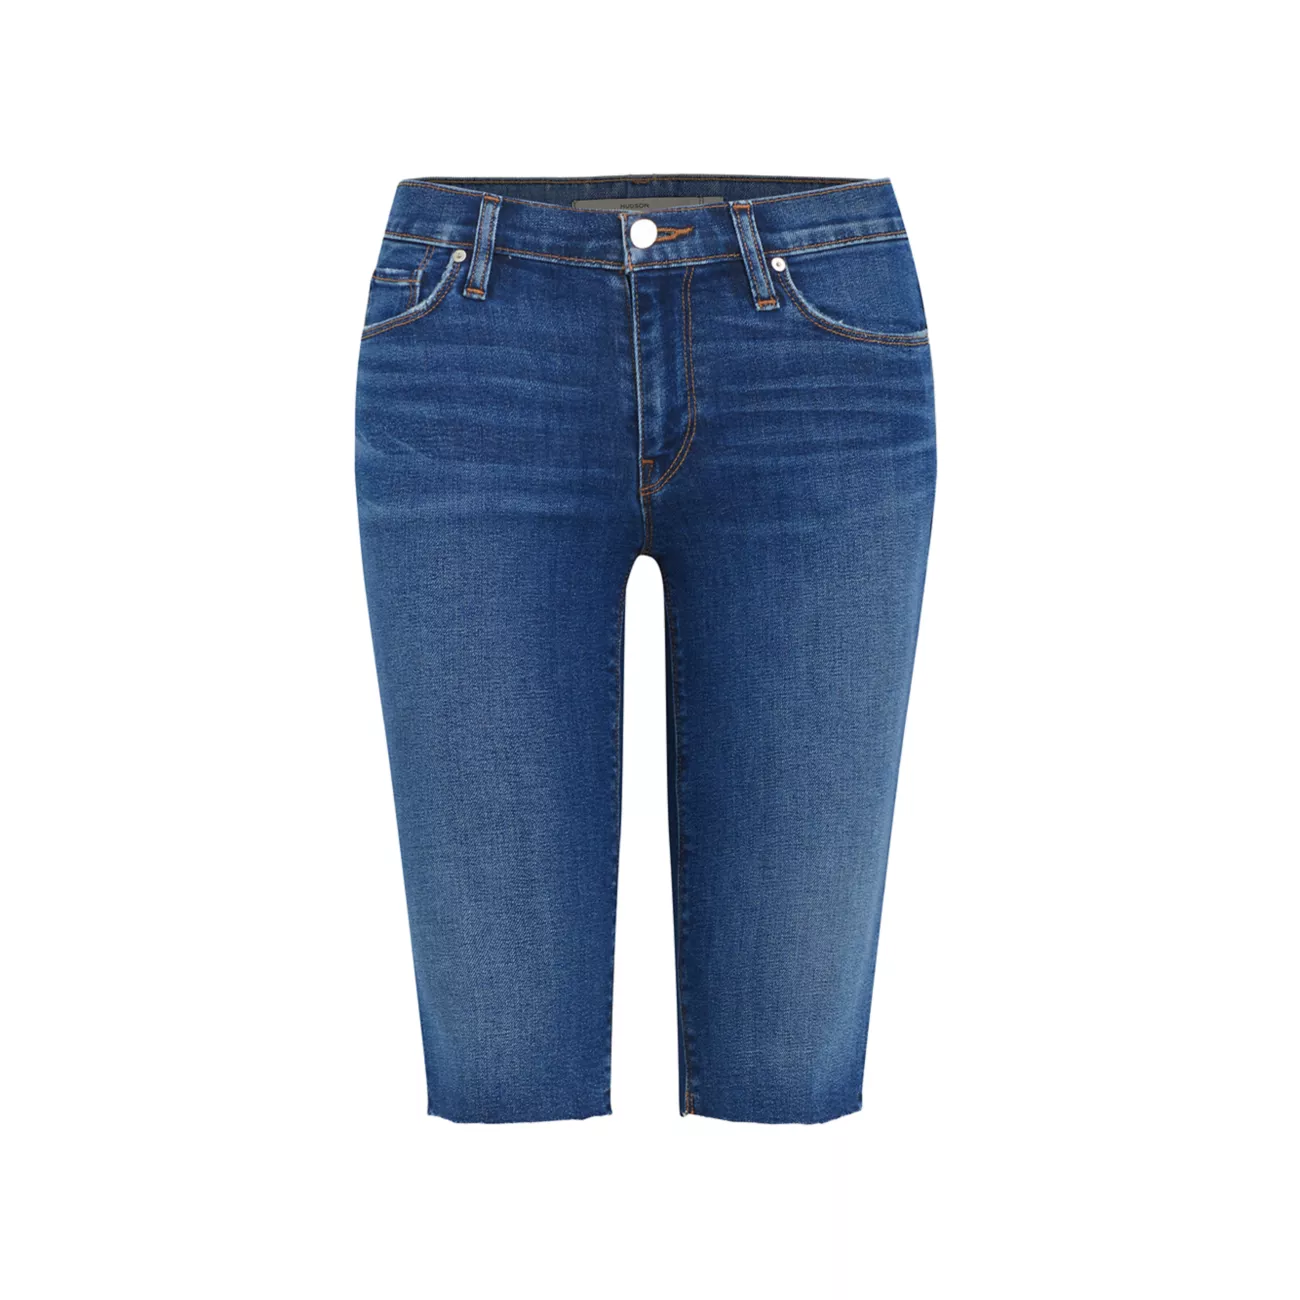 Джинсовые шорты длиной до колена со средней посадкой Amelia Hudson Jeans